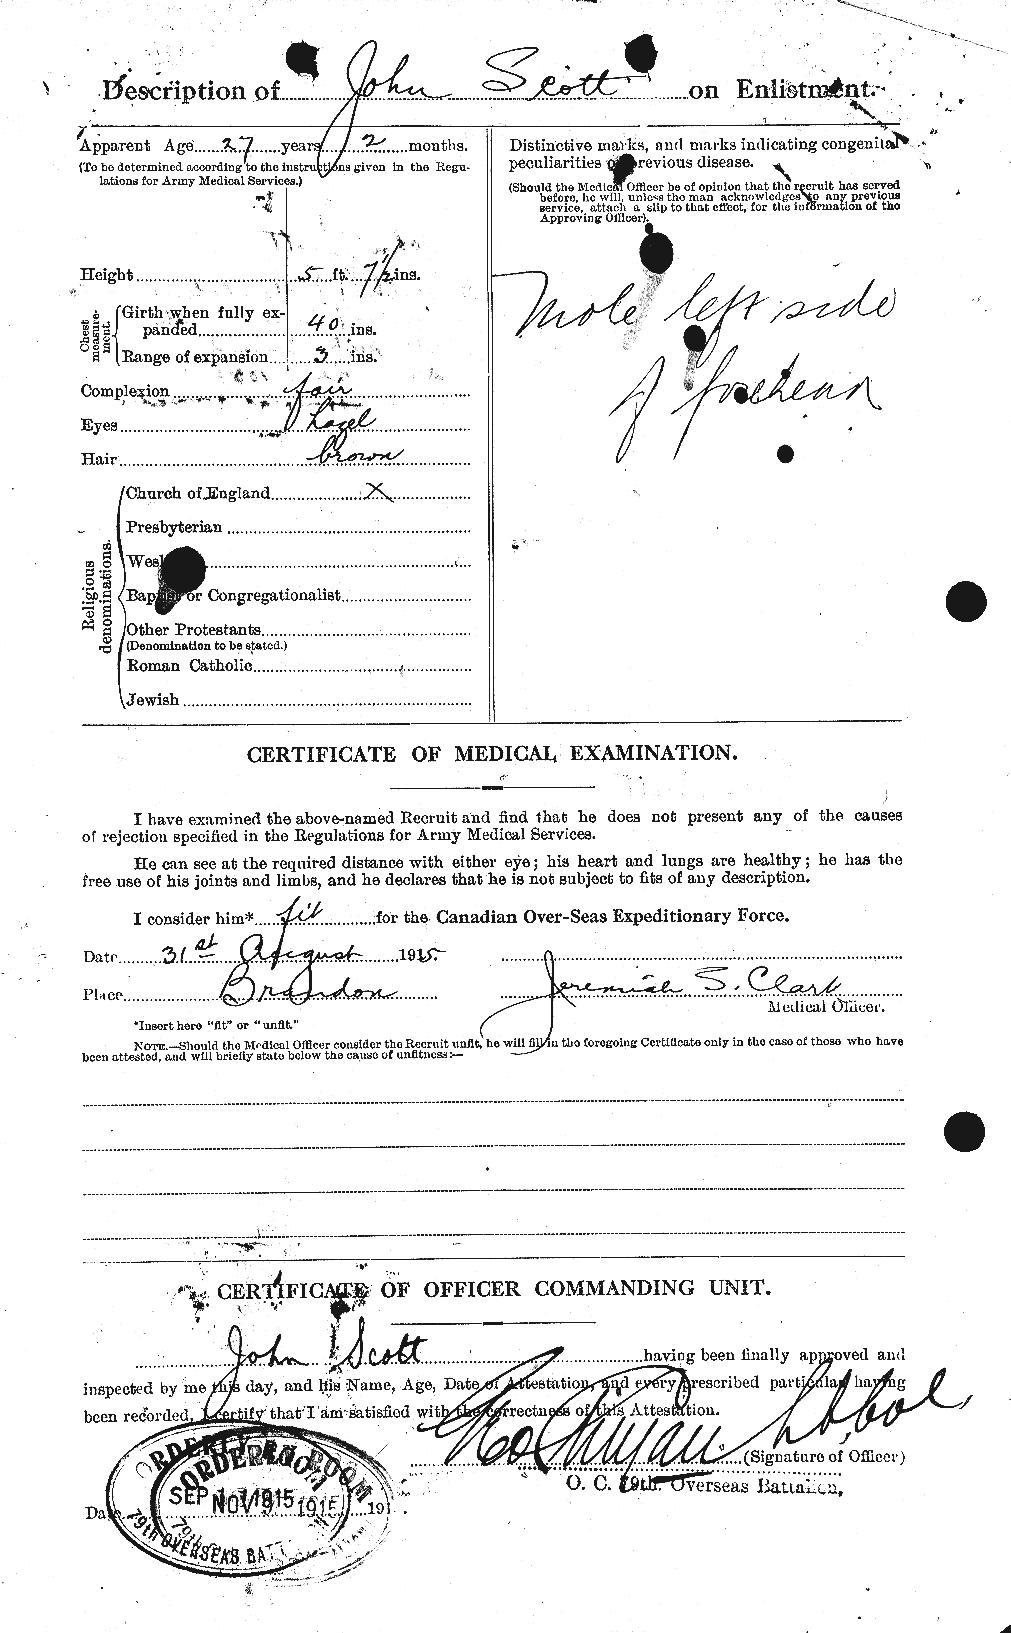 Dossiers du Personnel de la Première Guerre mondiale - CEC 084922b